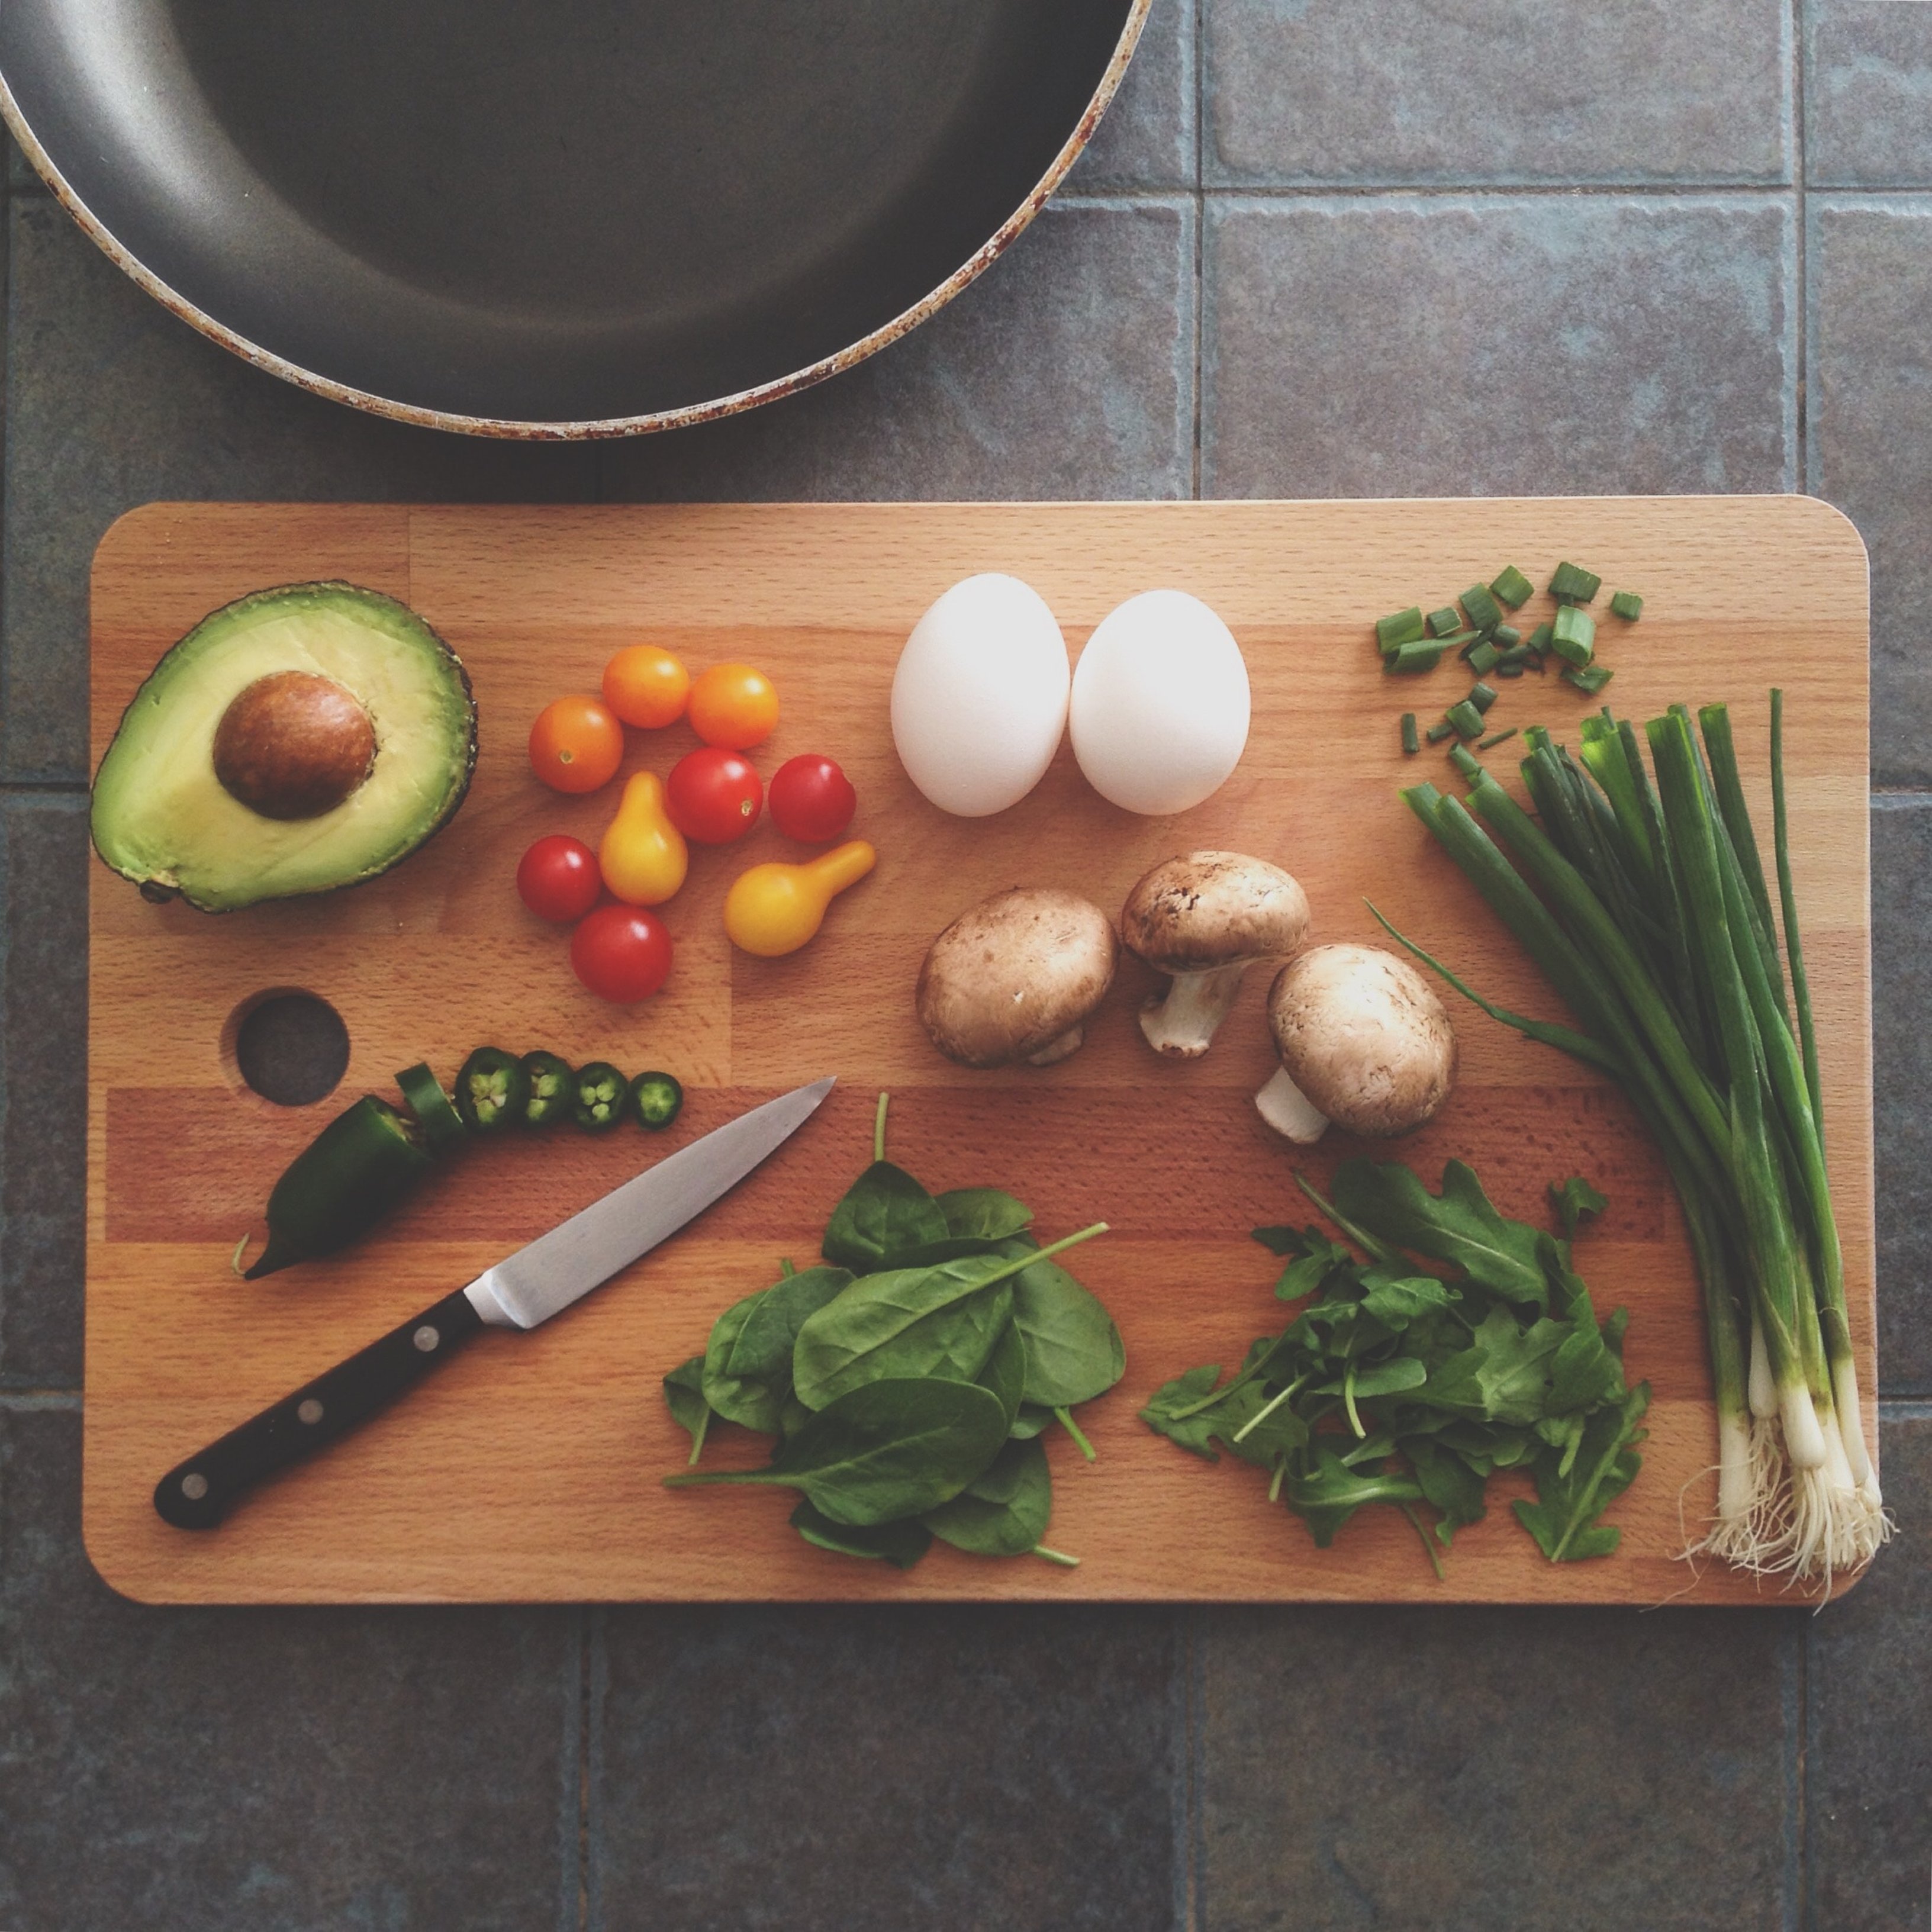 Els programes de cuina saludable, una eina perquè els nens mengin bé